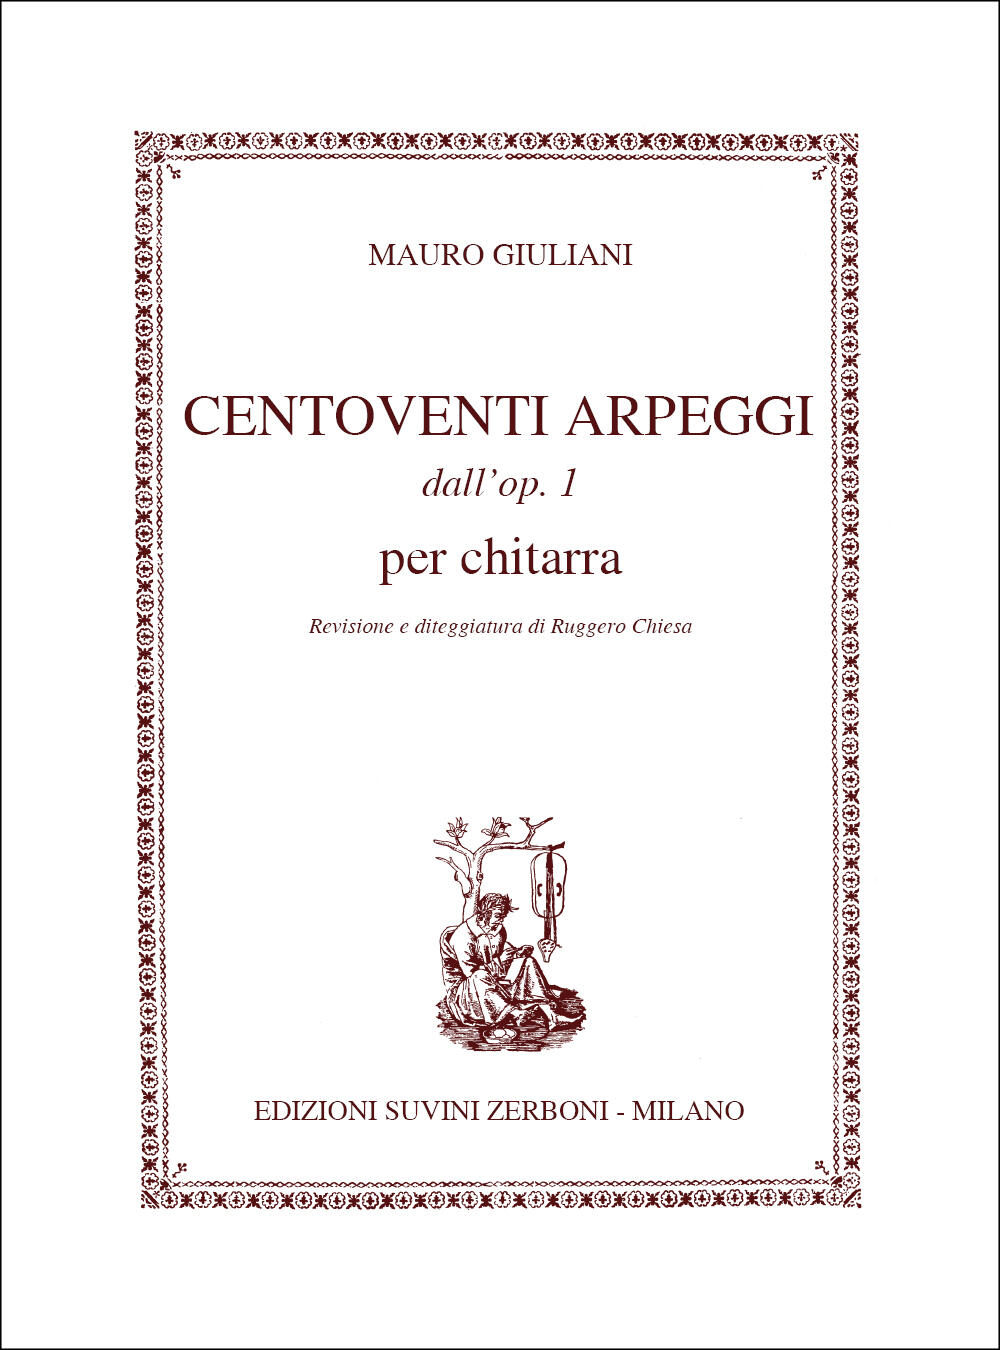 Centoventi Arpeggi dall-op. 1 per chitarra / Revisione e diteggiatura di Ruggero Chiesa Mauro Giuliani Gitarre Buch Sudien und bungen ESZ 8090 : photo 1